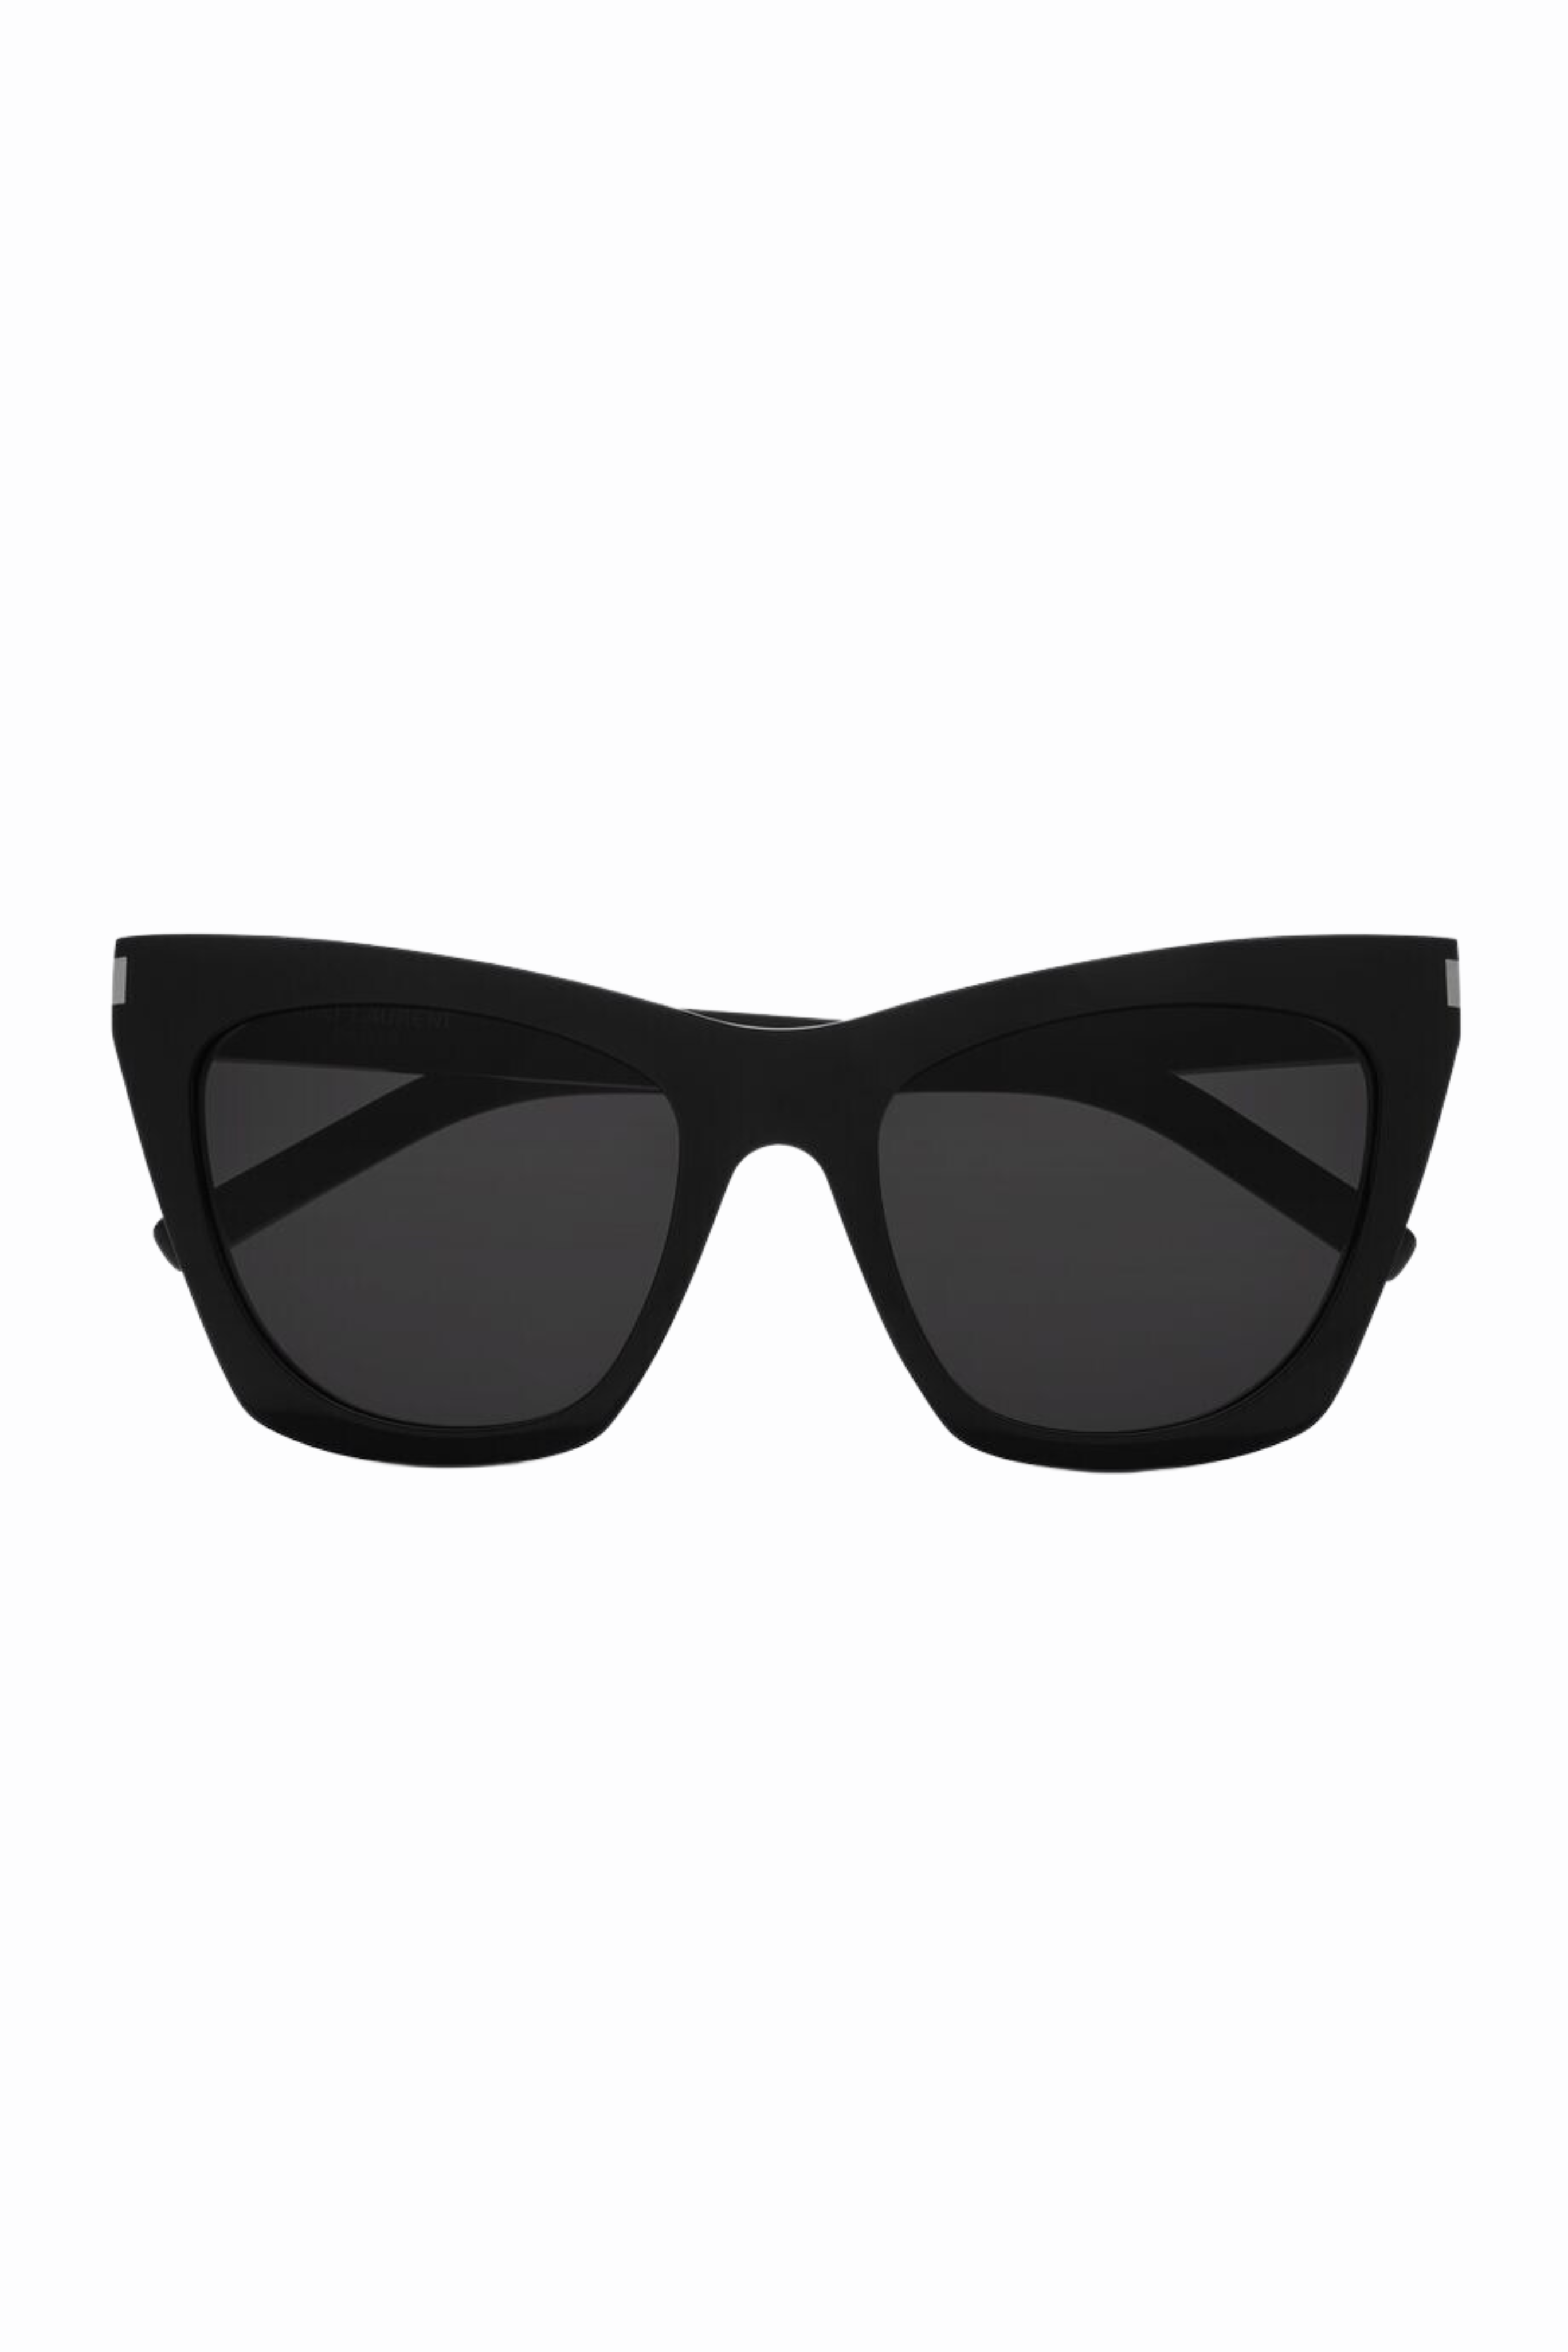 Saint Laurent Kate Sunglasses